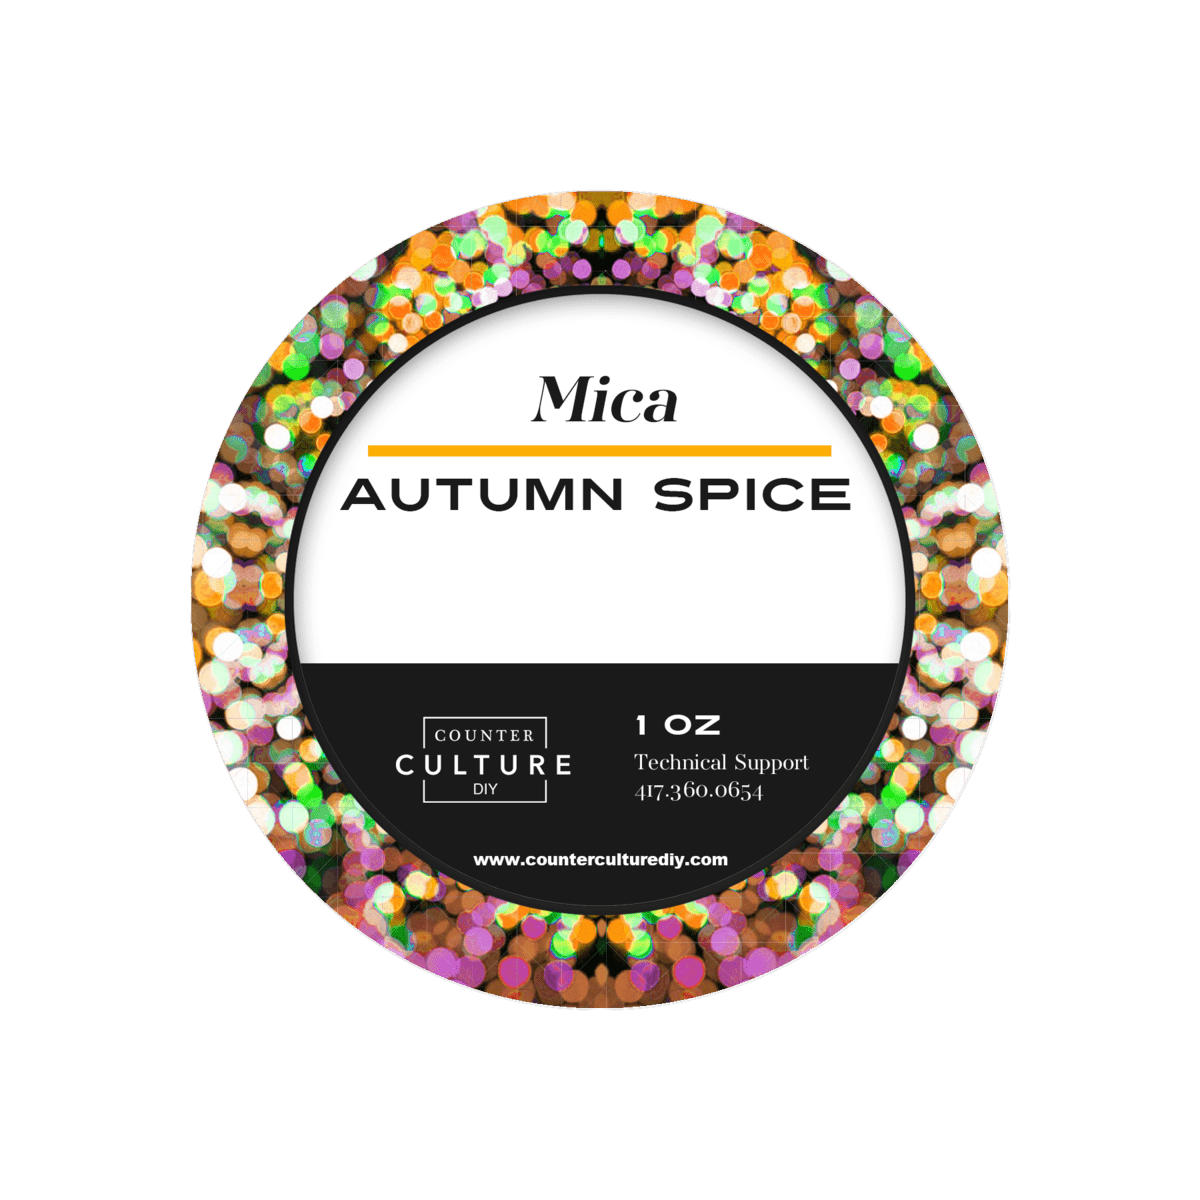 Autumn Spice